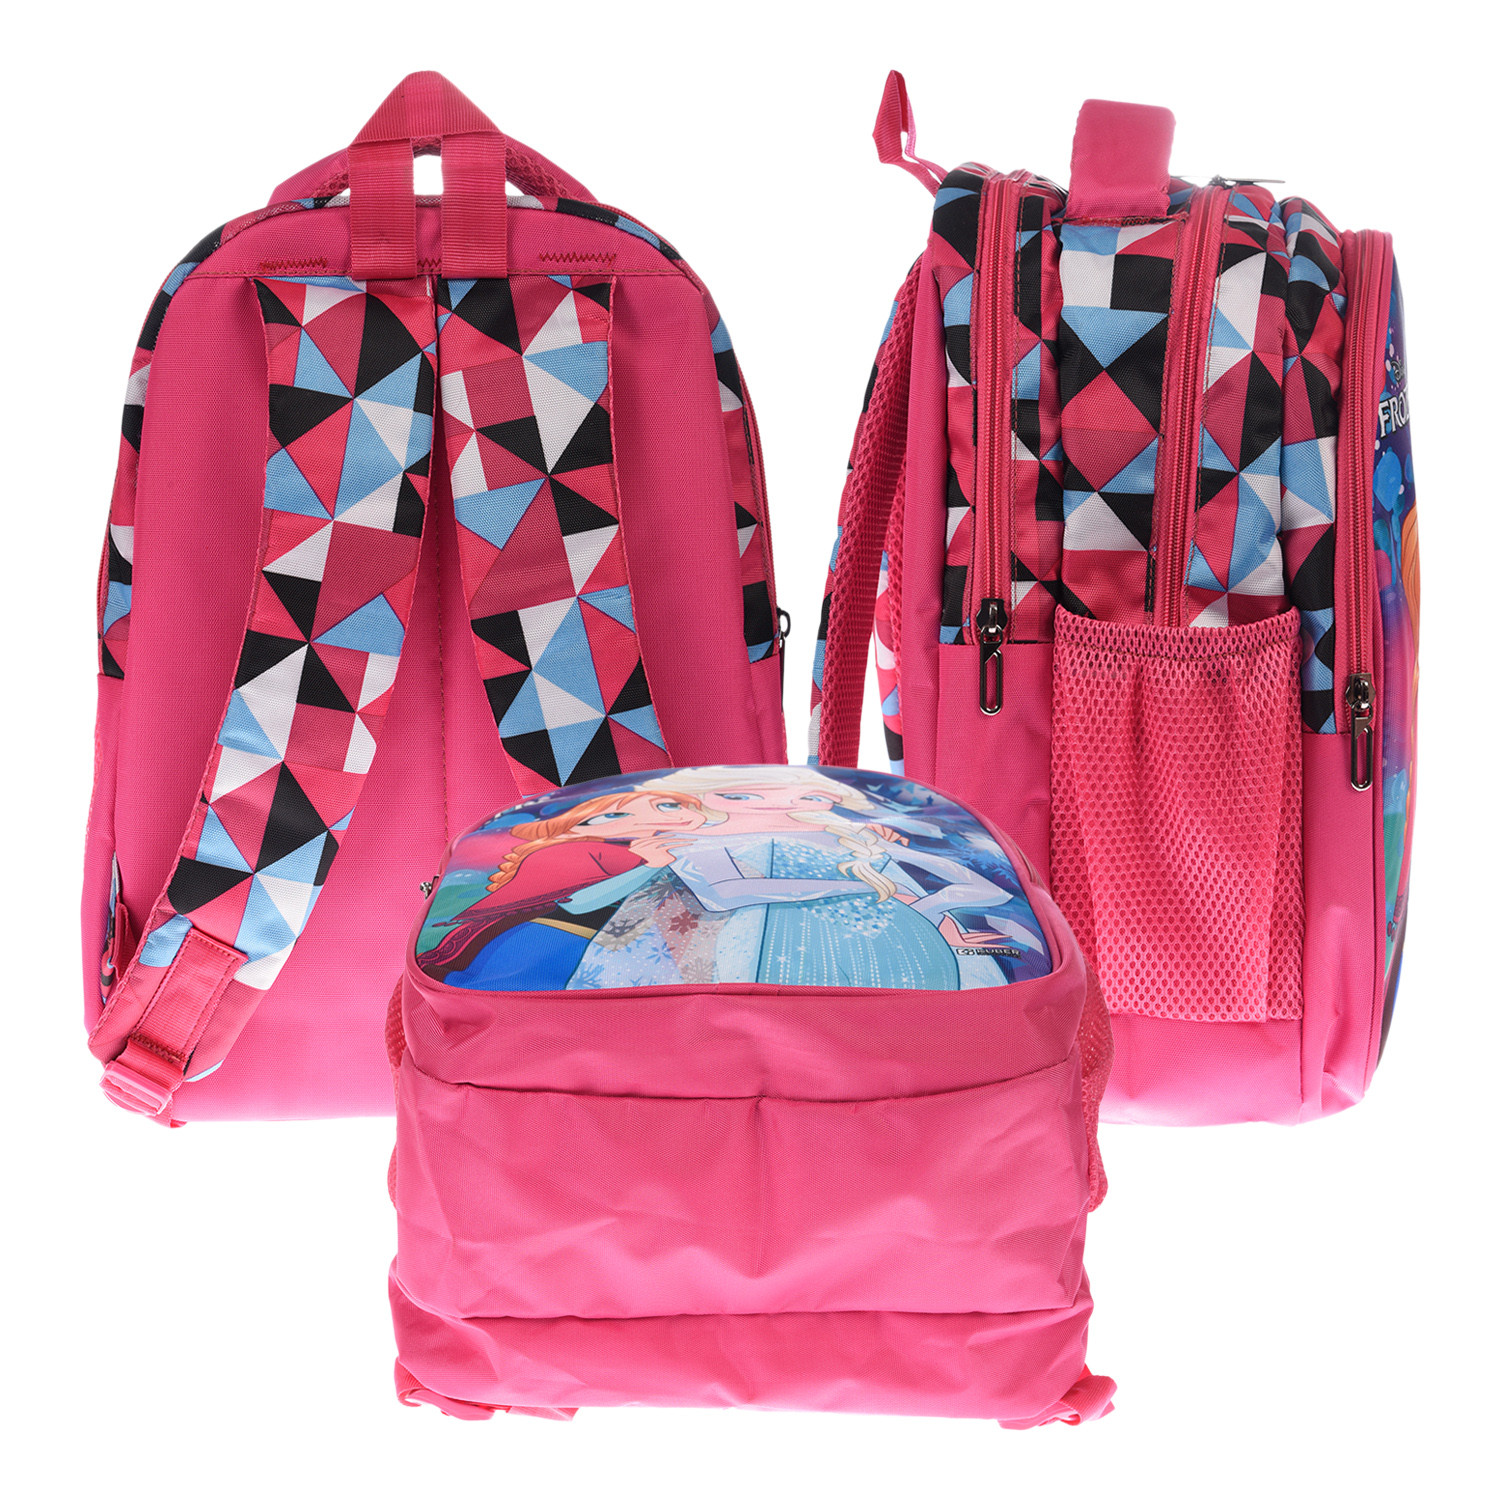 Kuber Industries Disney Frozen School Bag|3 Compartment Rexine School Bagpack|School Bag for Kids|School Bags for Girls with Zipper Closure (Pink)